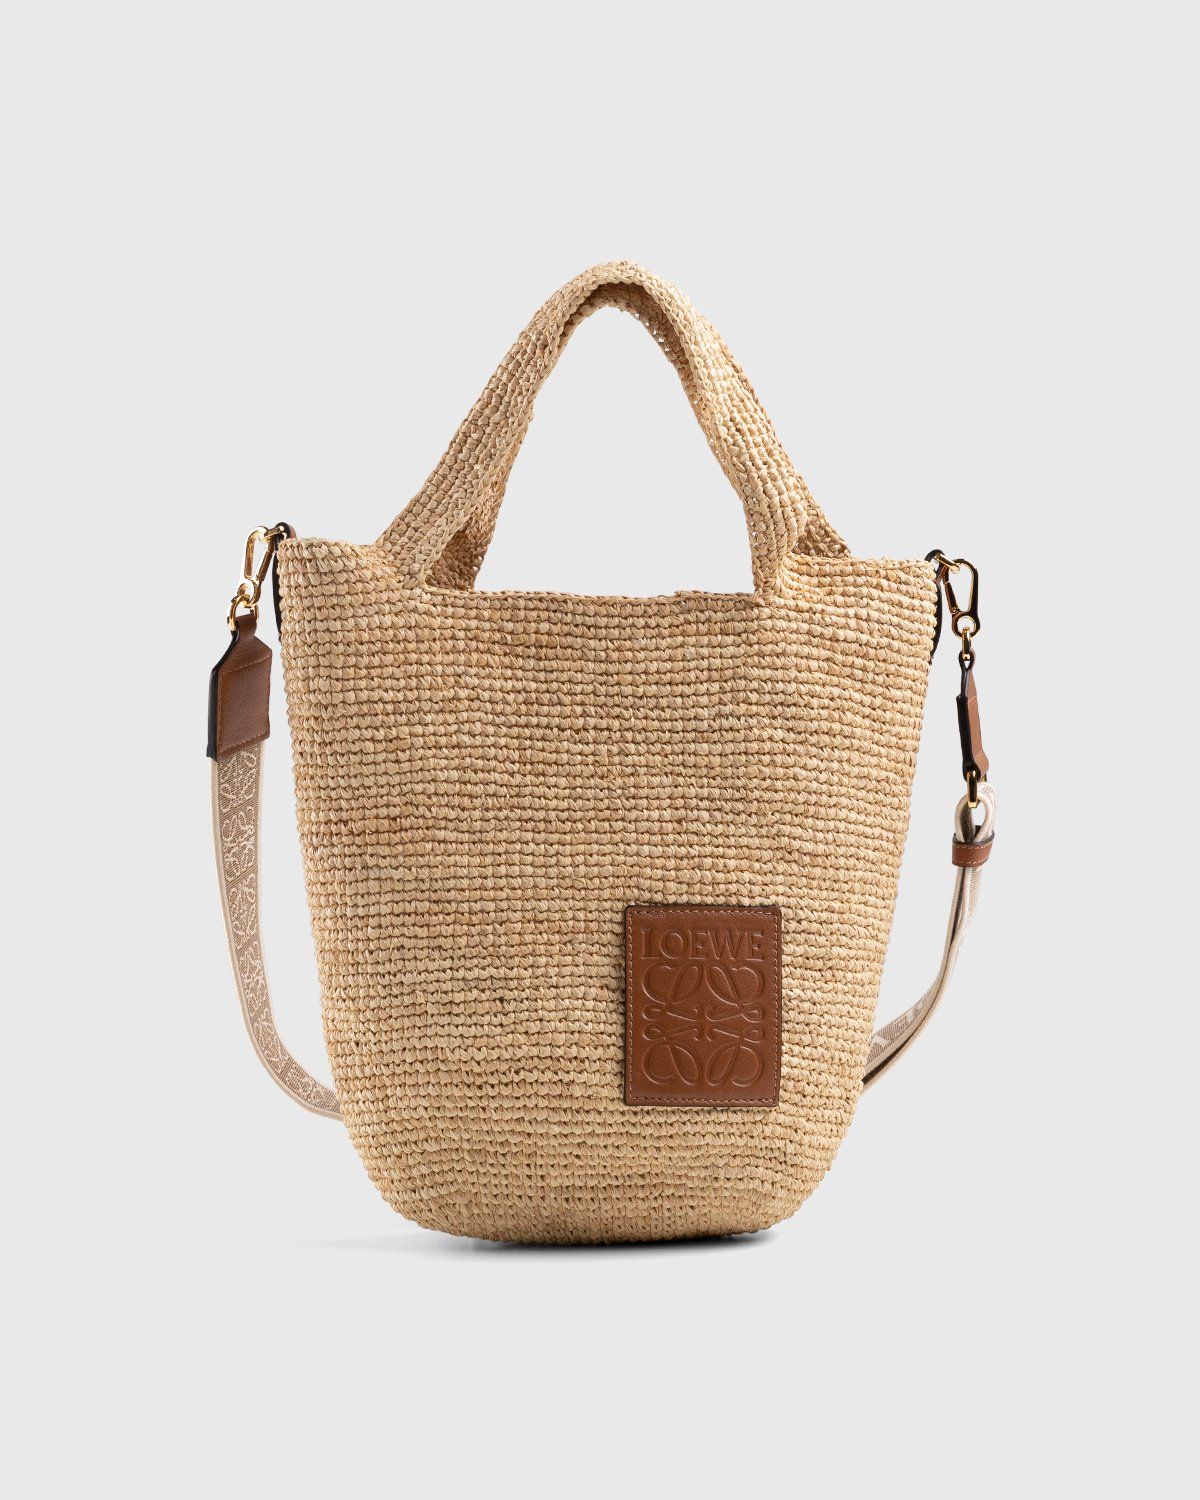 Loewe Basket Bag Palm Leaf In Beige/Brown